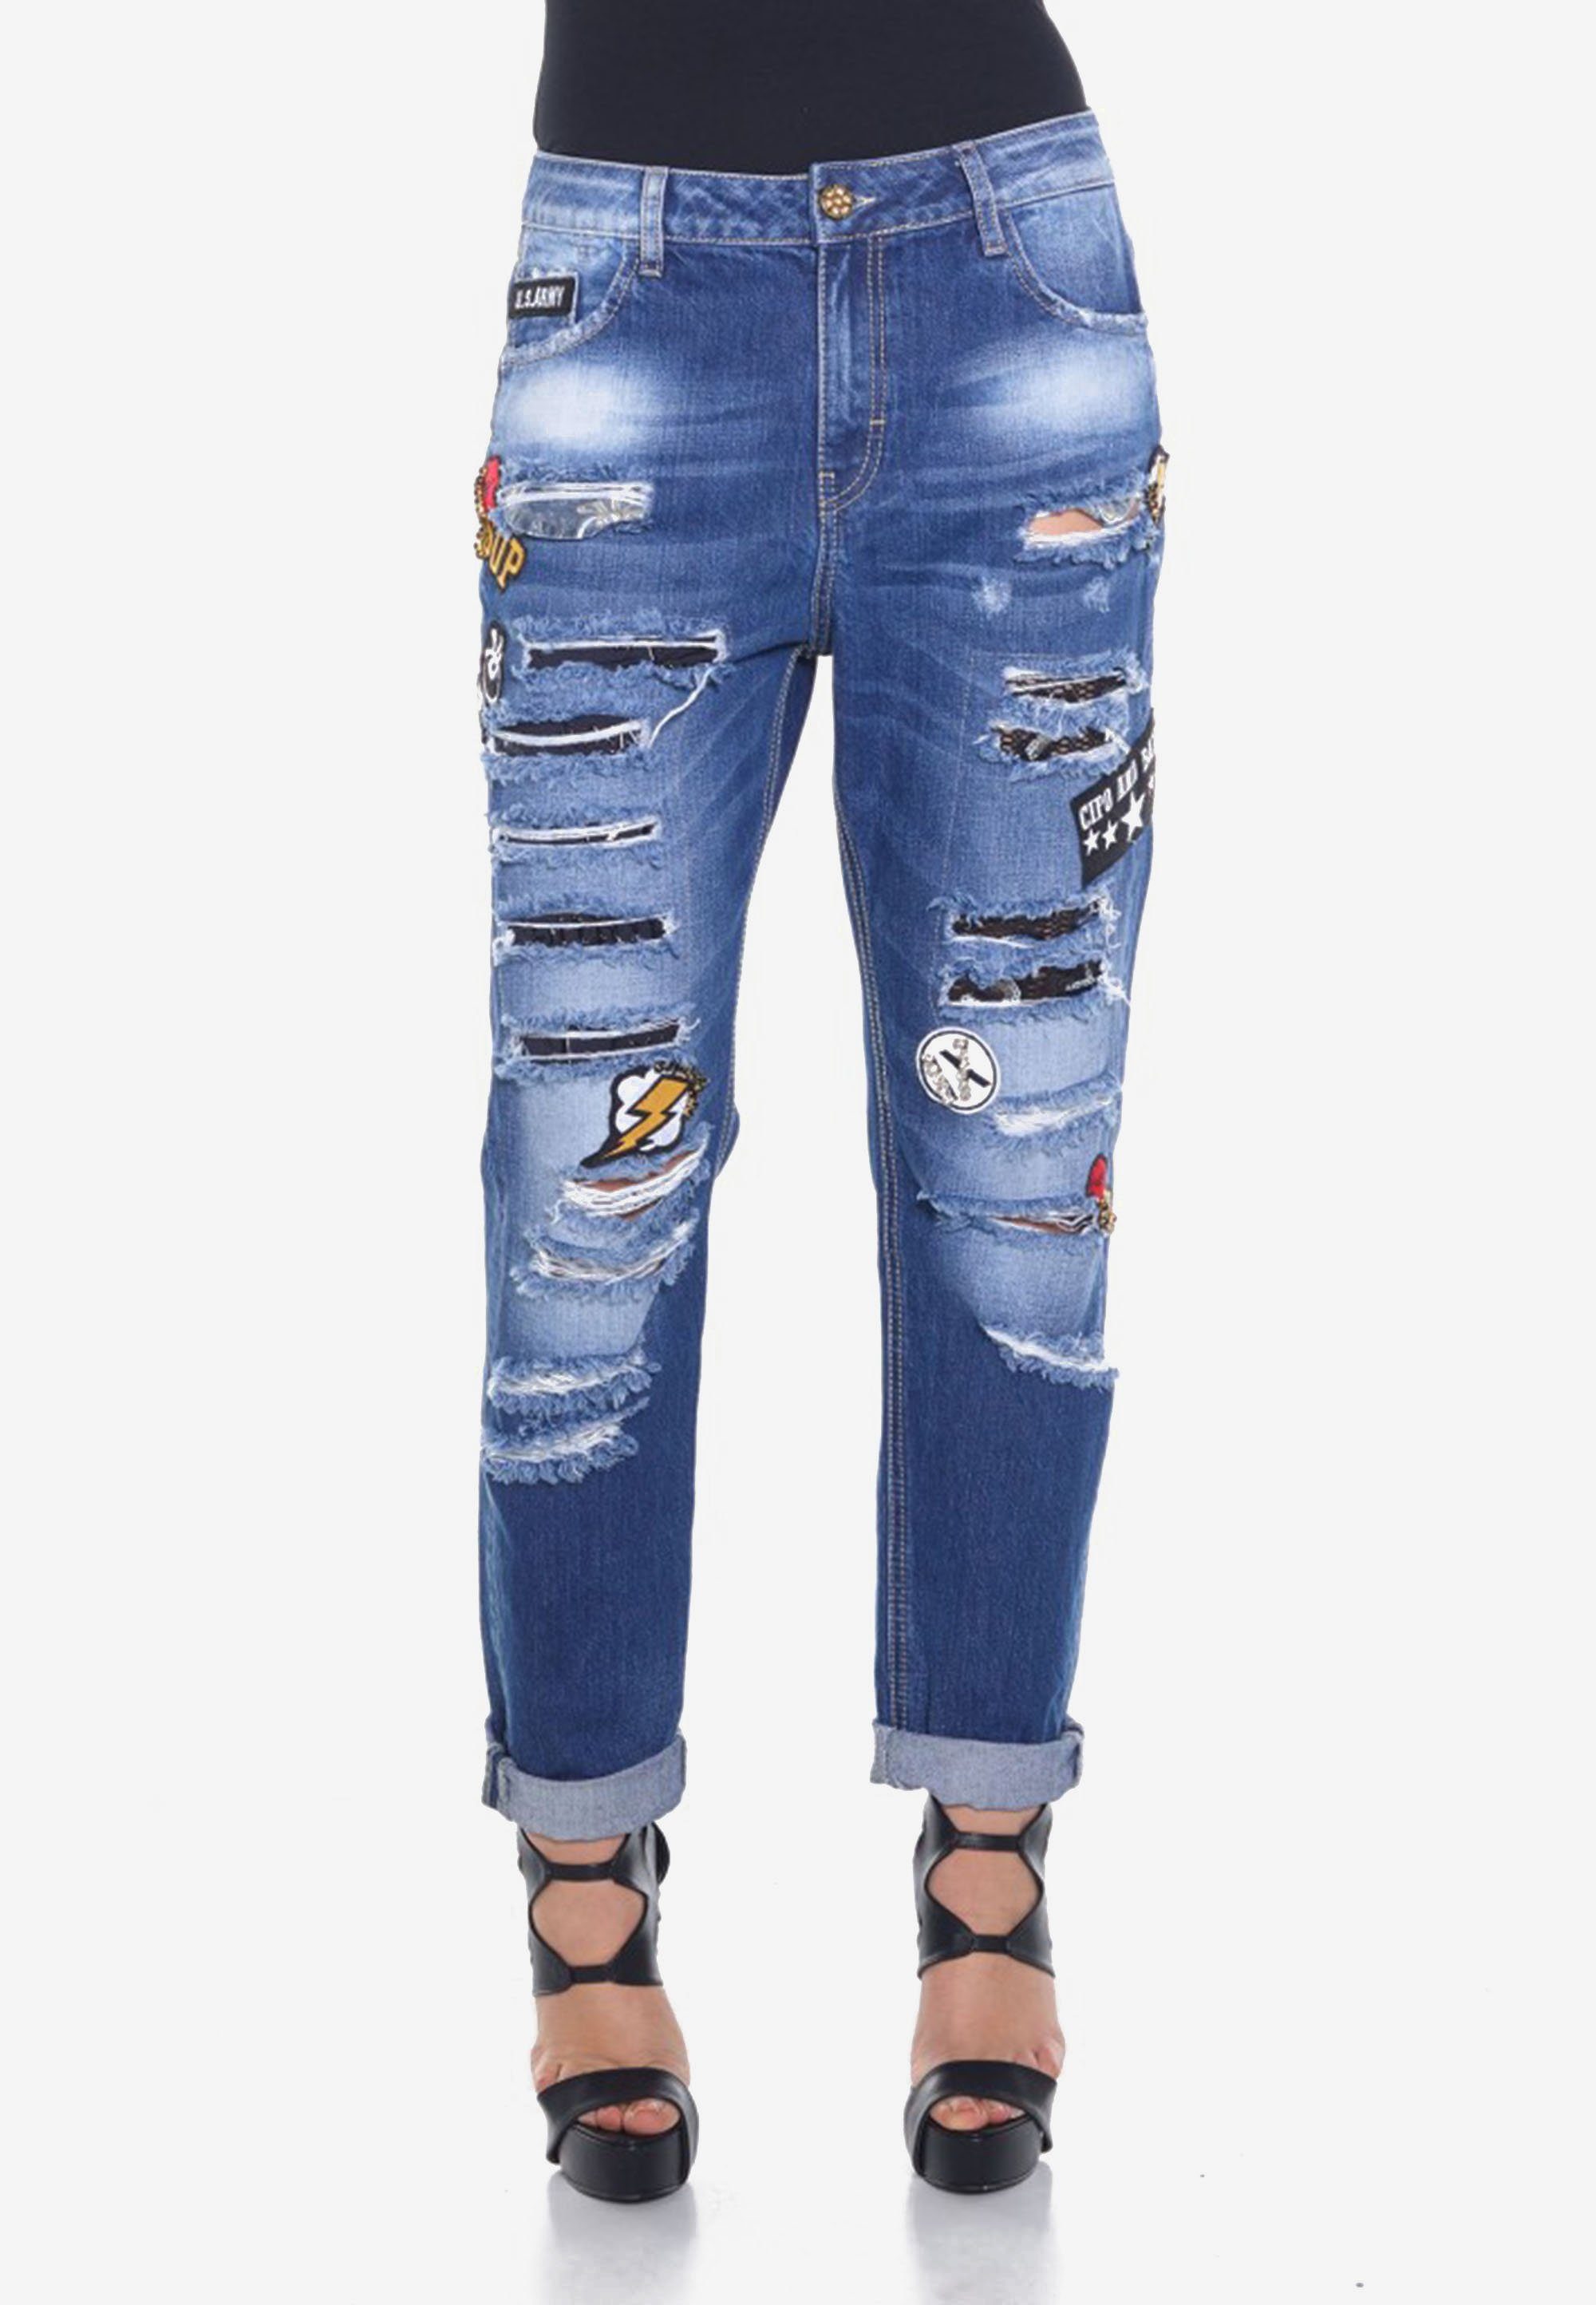 Cipo & Baxx Damen Jeans online kaufen | OTTO